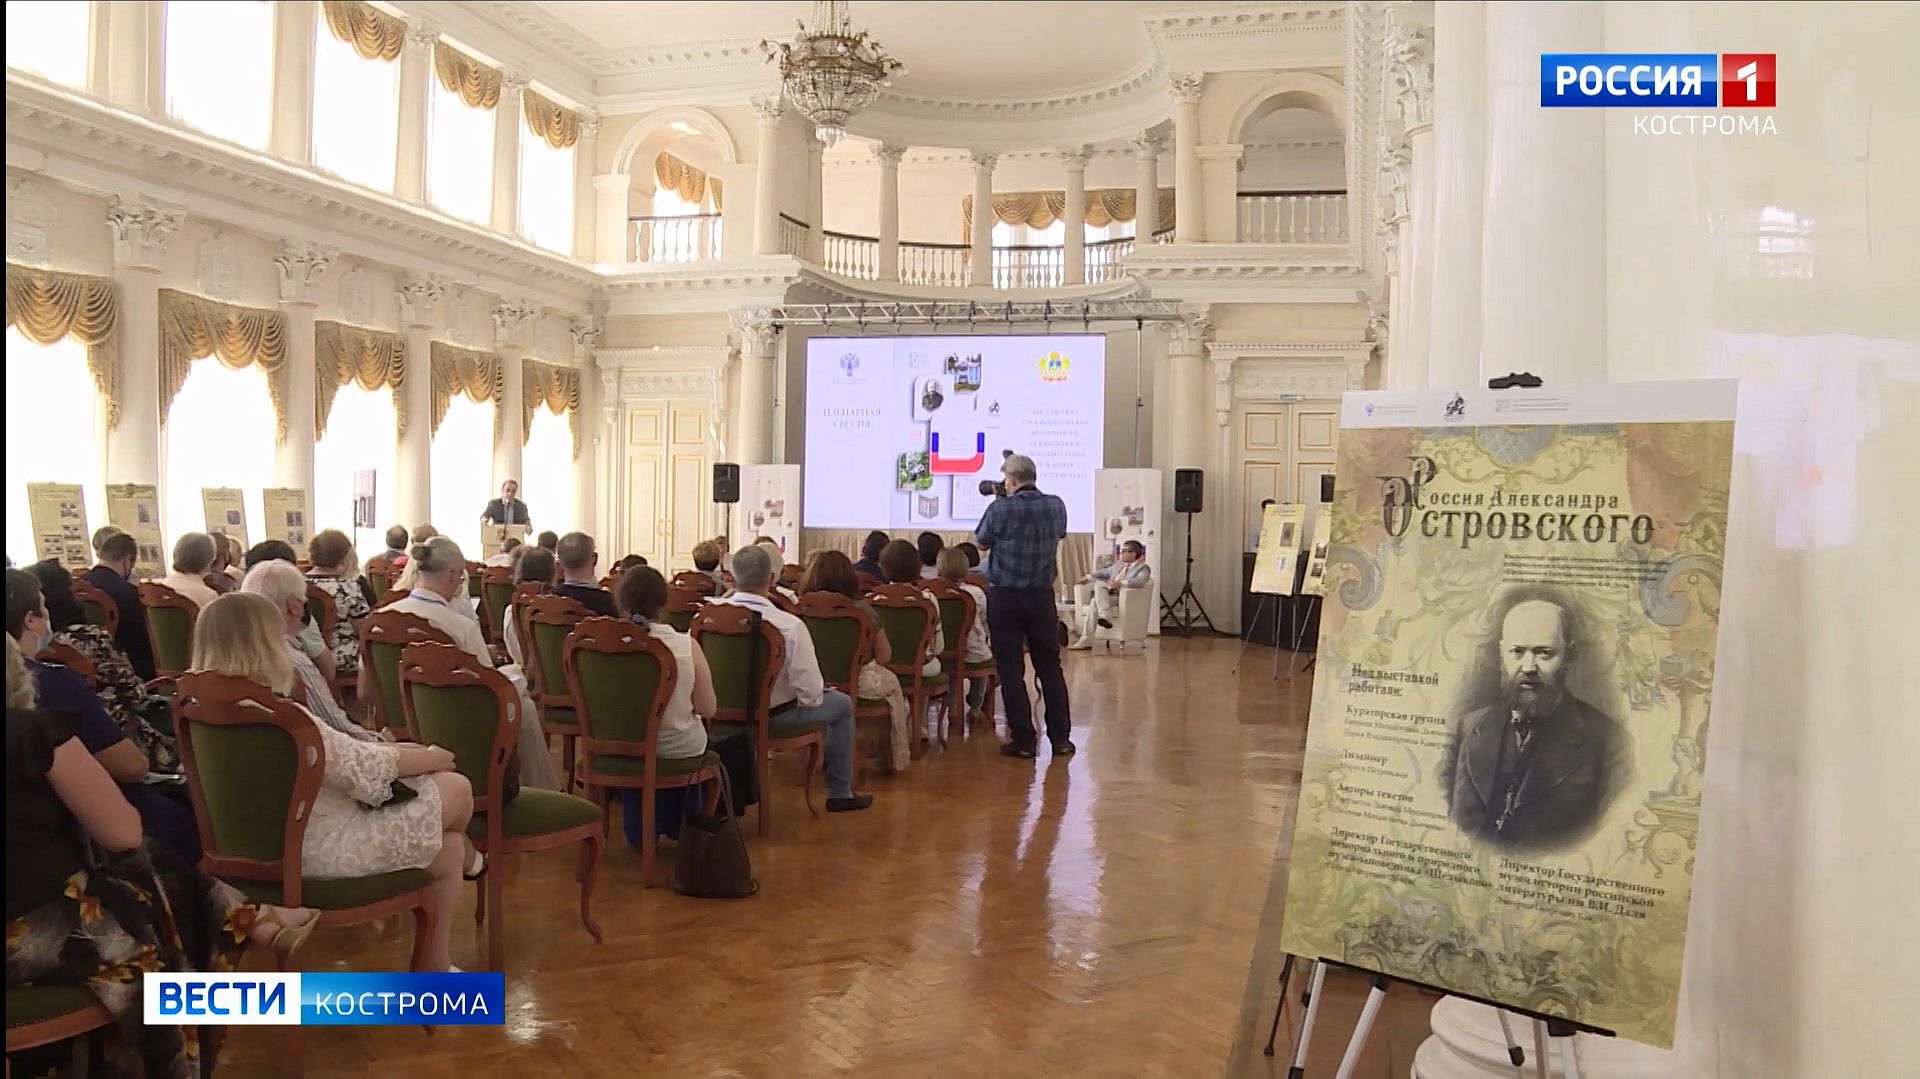 Кострома начала готовиться к празднованию юбилея Александра Островского